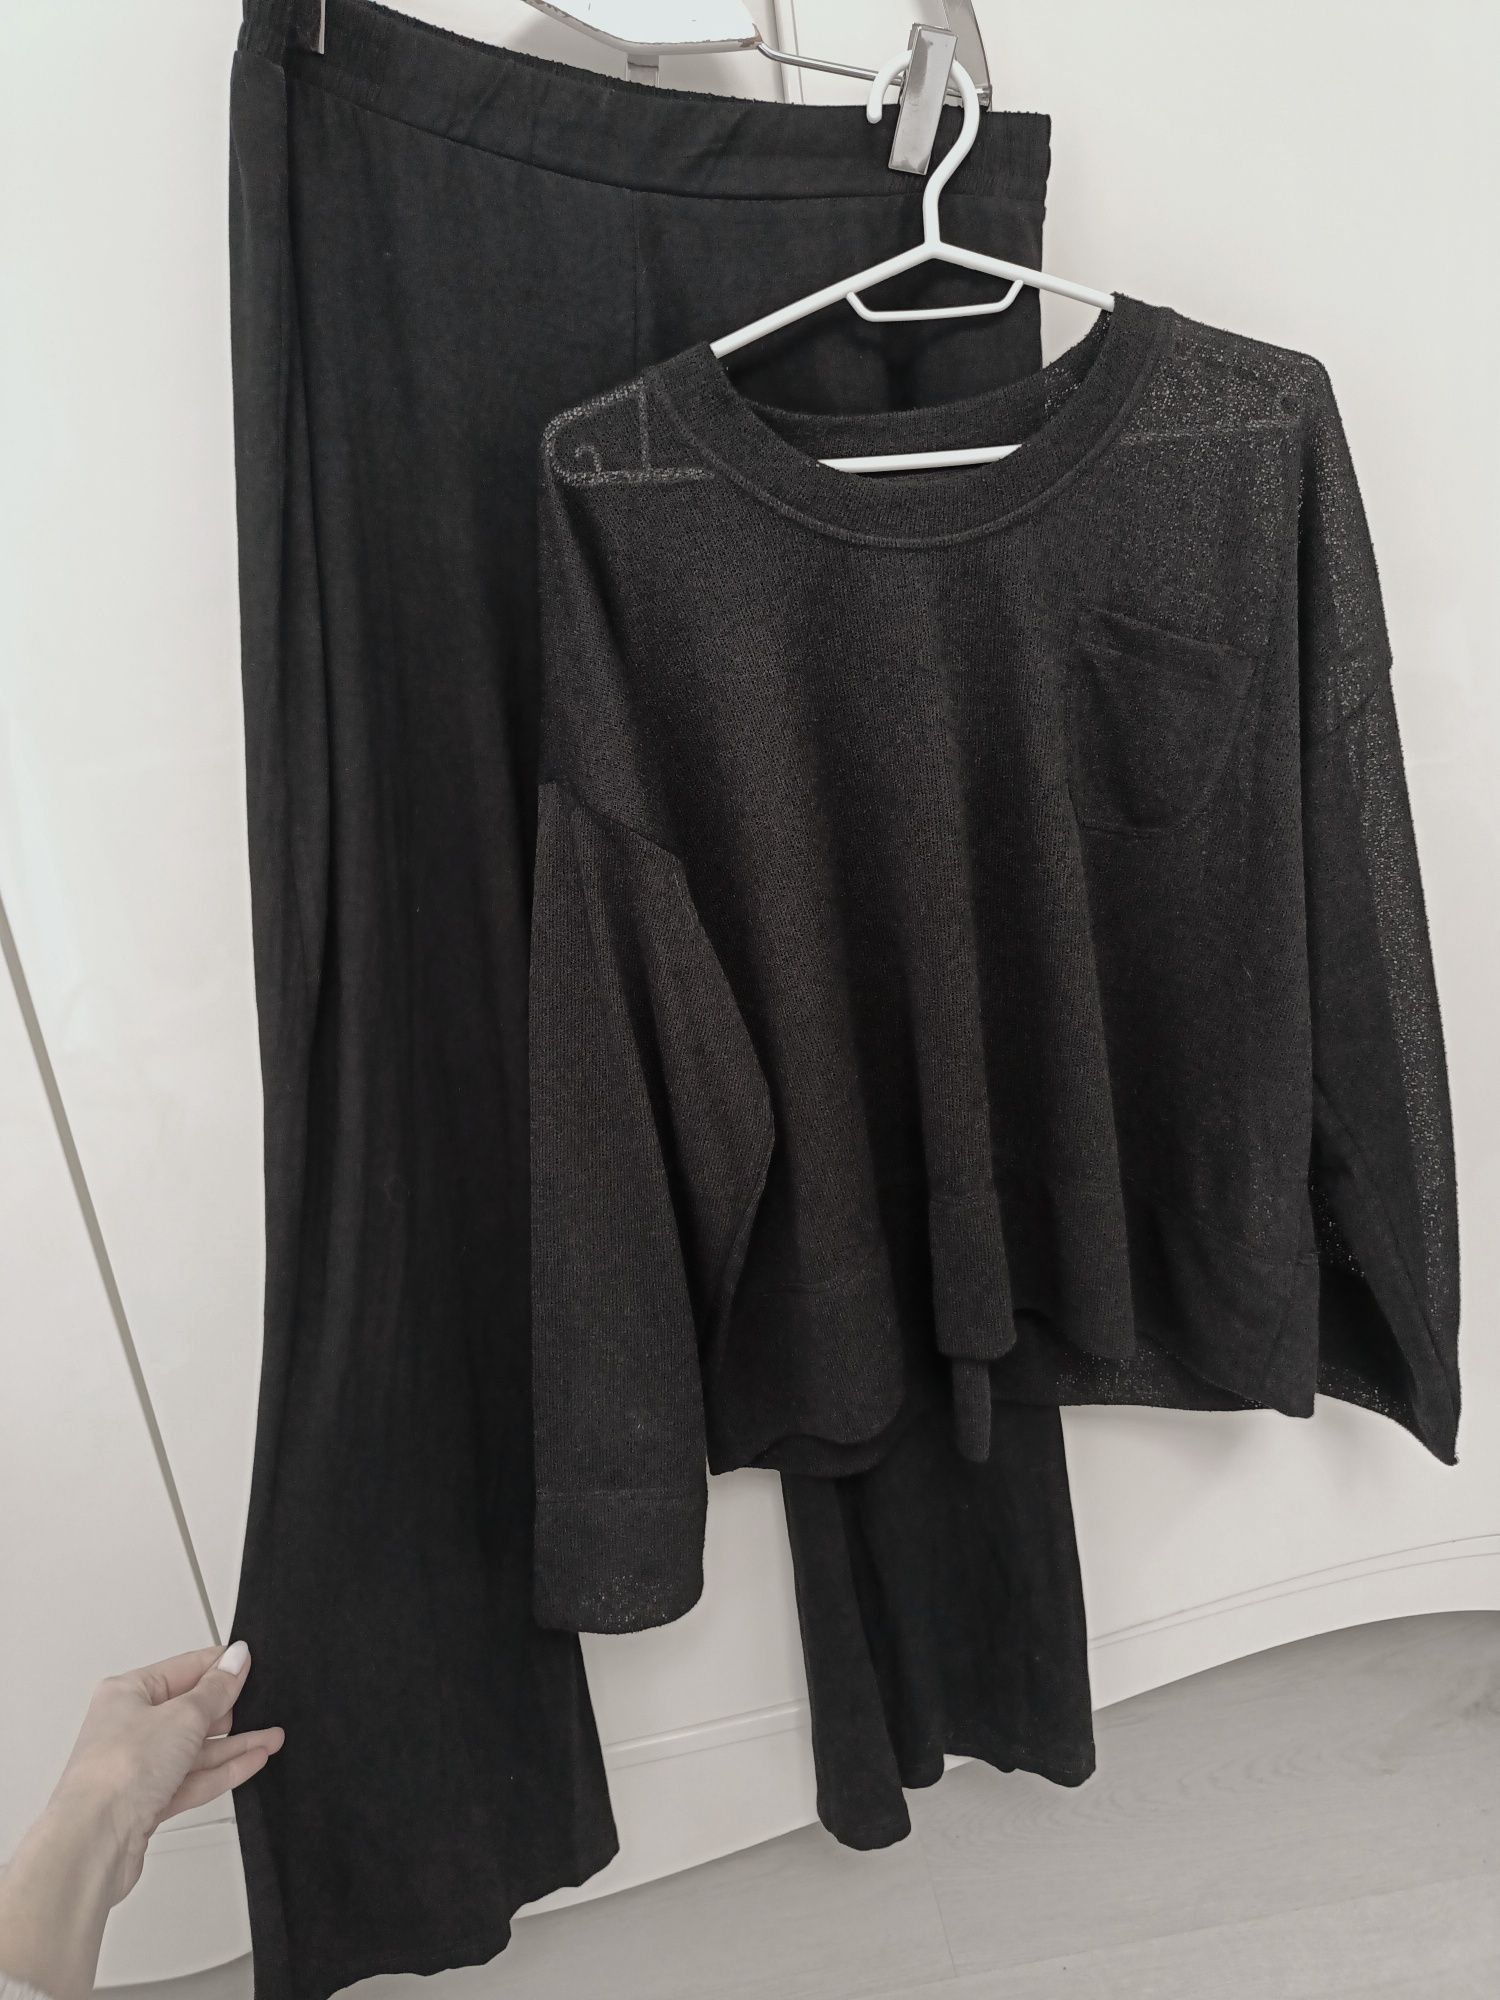 НОВІ 50-52-54 чорне плаття туніка блузка костюм футболка кофта рубашка